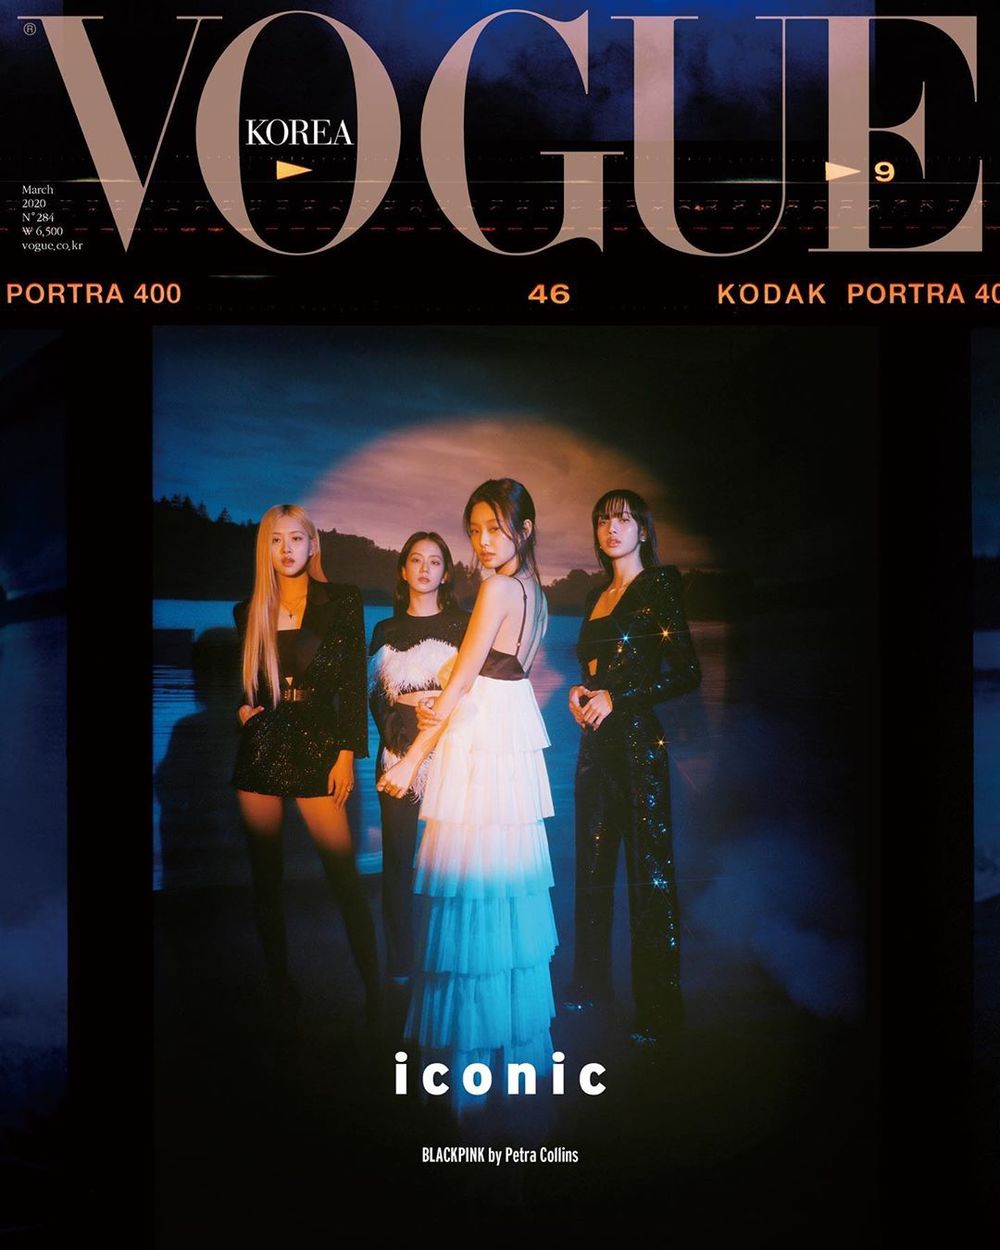  
BLACKPINK lên bìa tạp chí Vogue số tháng 3.